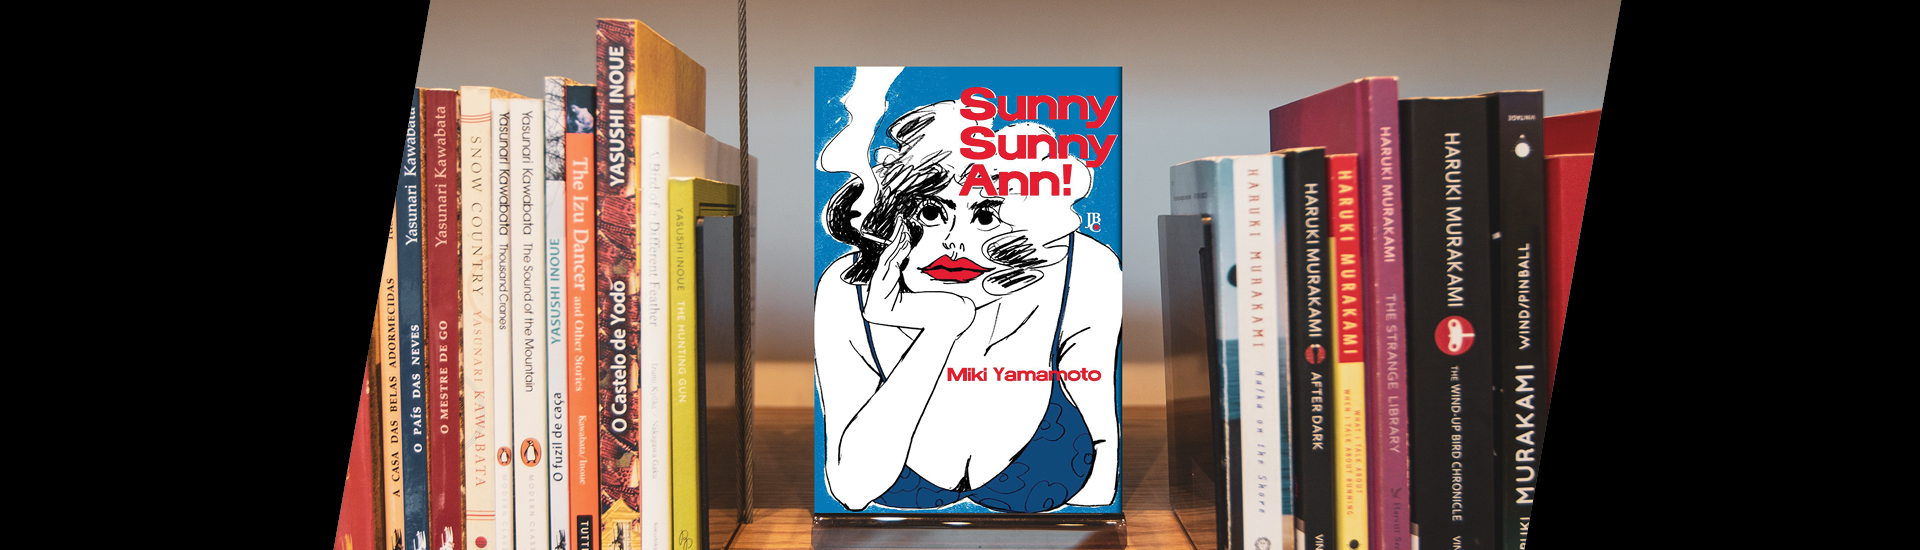 Livro Sunny Sunny Ann!, de Miki Yamamoto em prateleira com outros livros ao lado